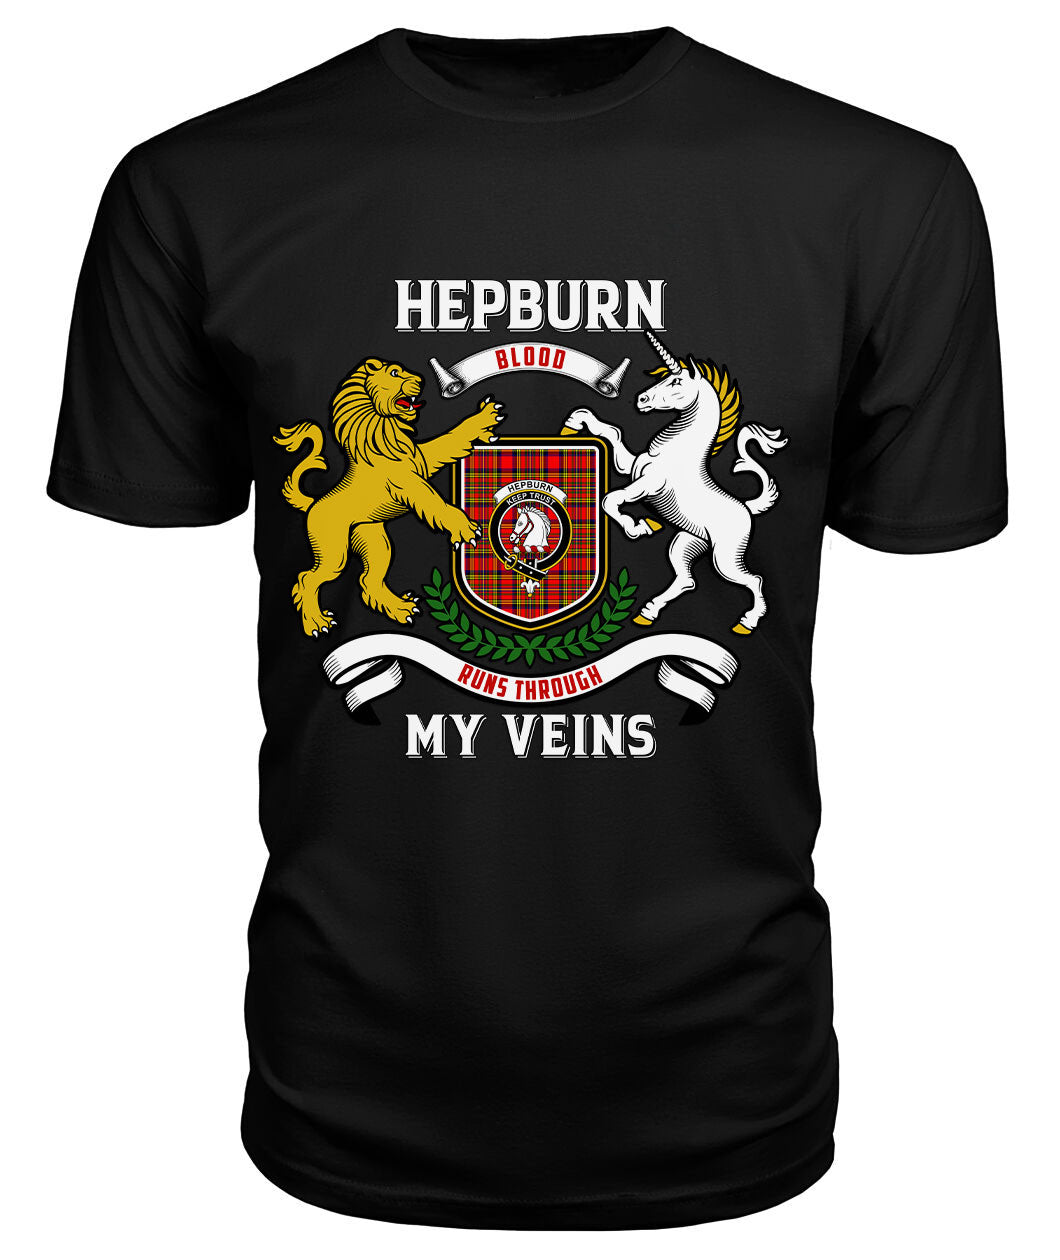 Hepburn Tartan Crest 2D T-shirt - Blood Runs Through My Veins Style